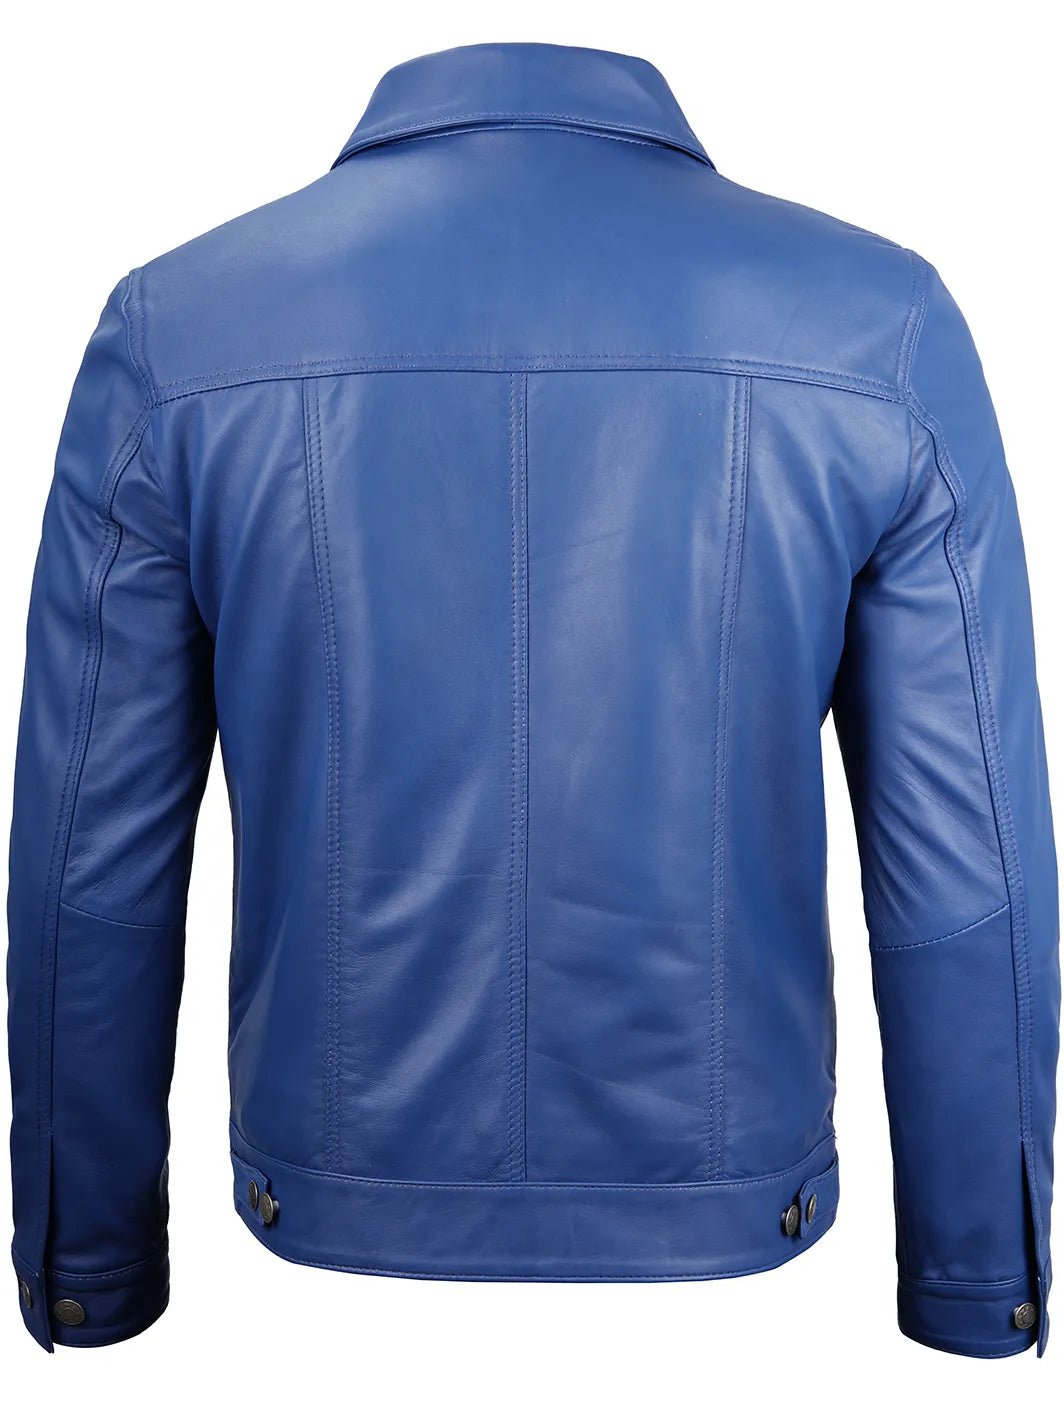 Fernando trucker blue leather jacket